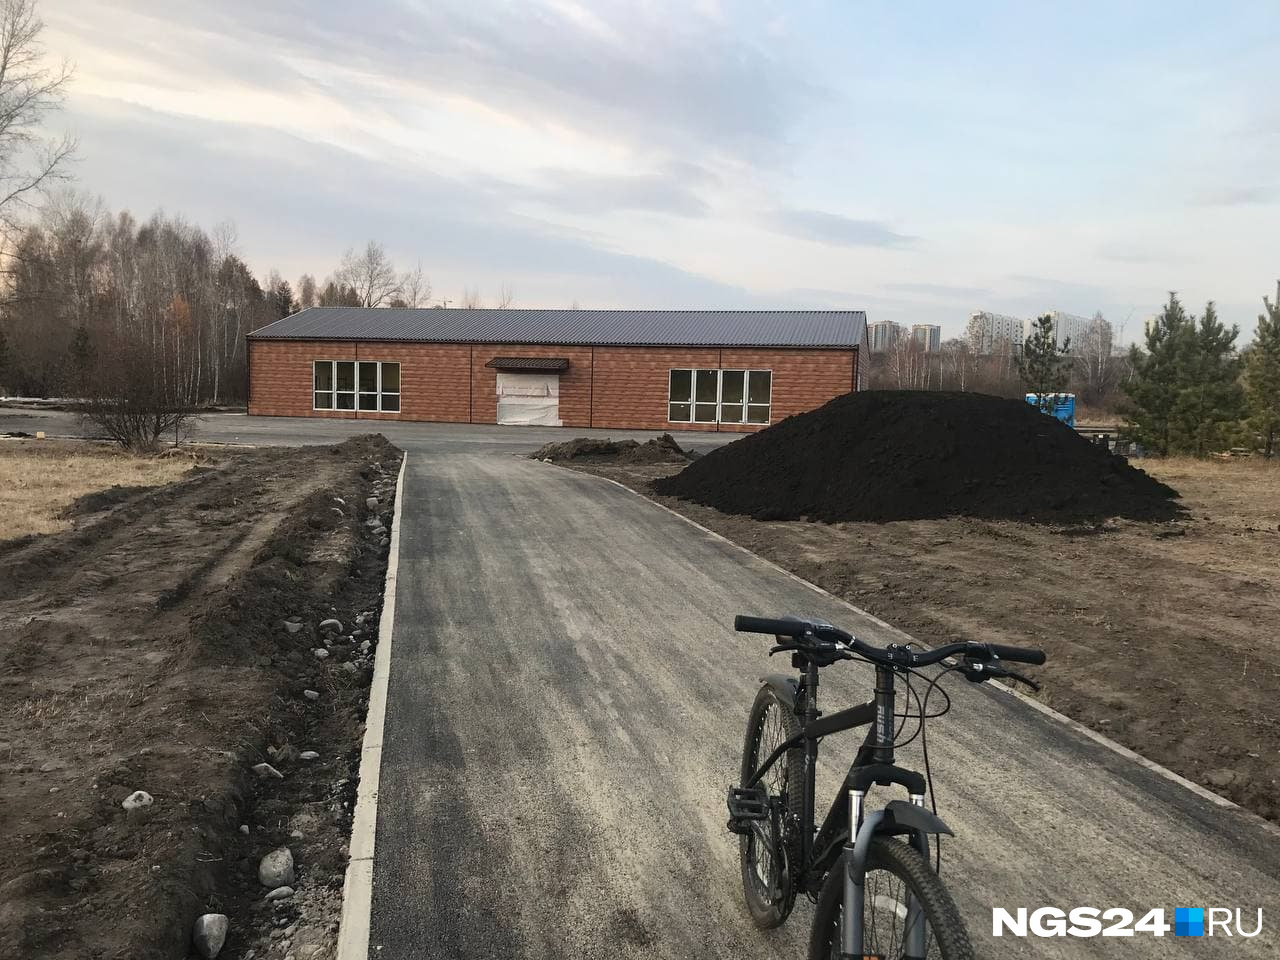 Начинается велодорожка у нового спортивного павильона — он тоже в стадии строительства